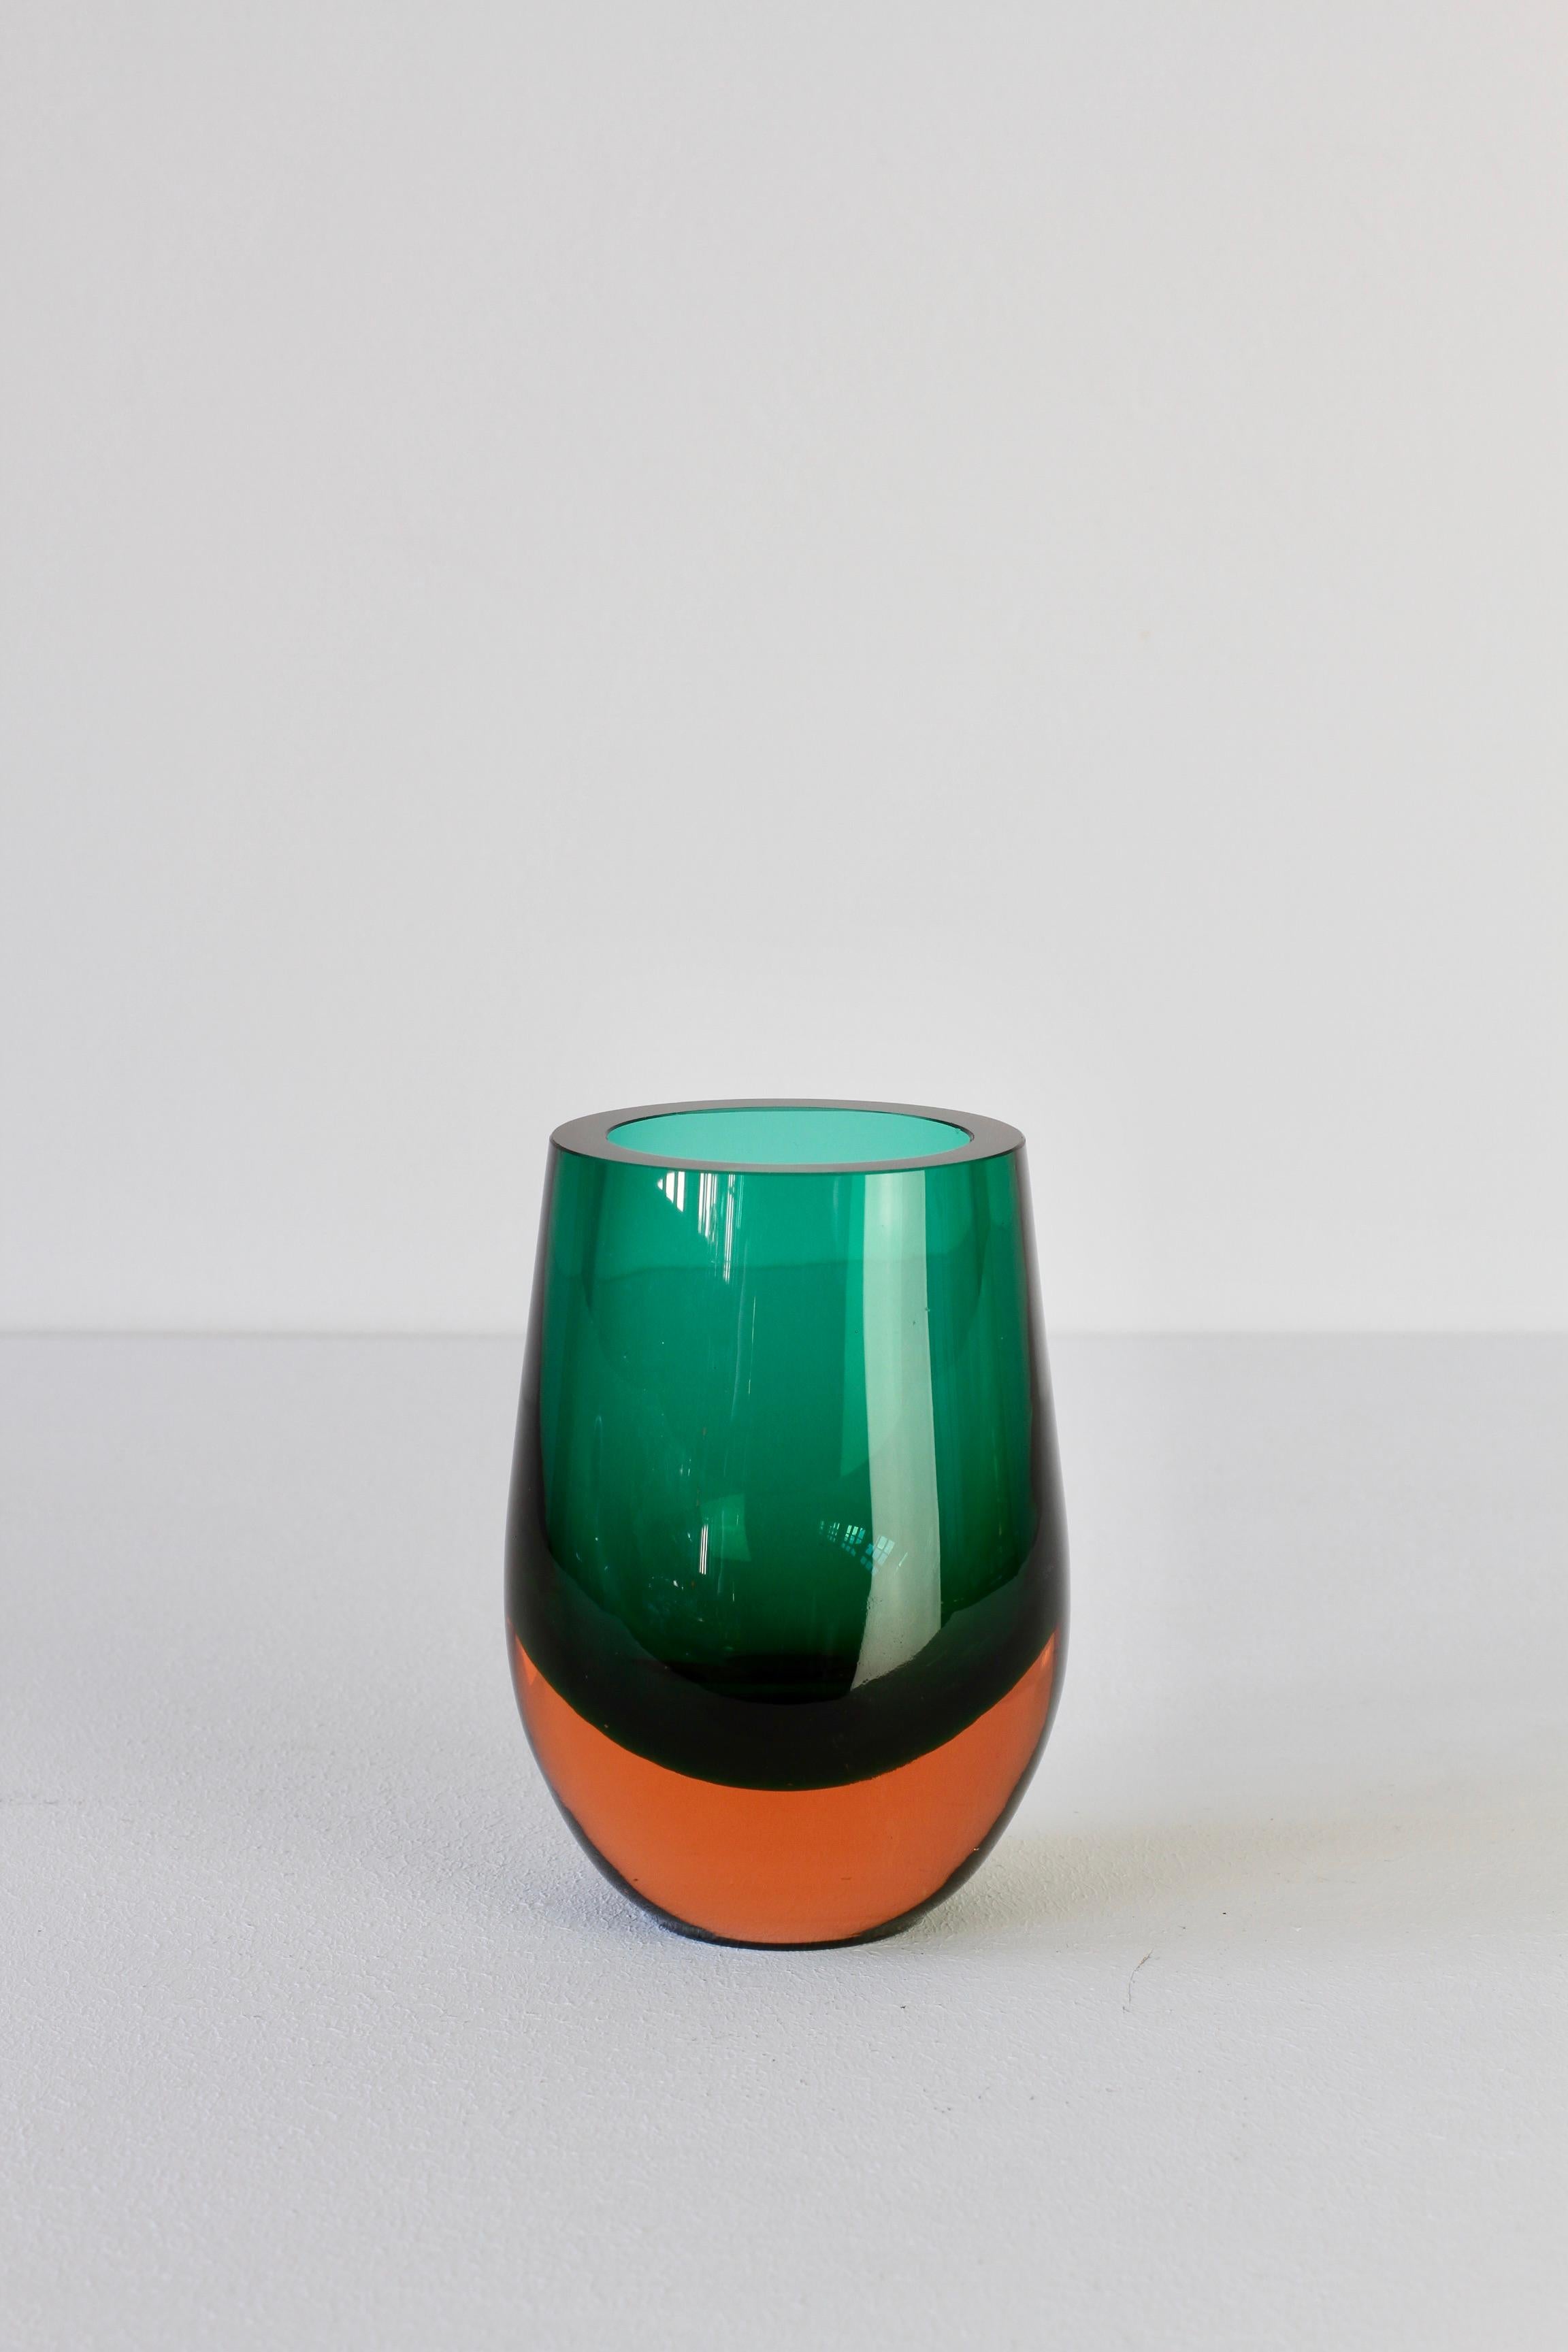 Vintage Green and Orange Glass Vase by Konrad Habermeier for Gral Glas, 1965 4